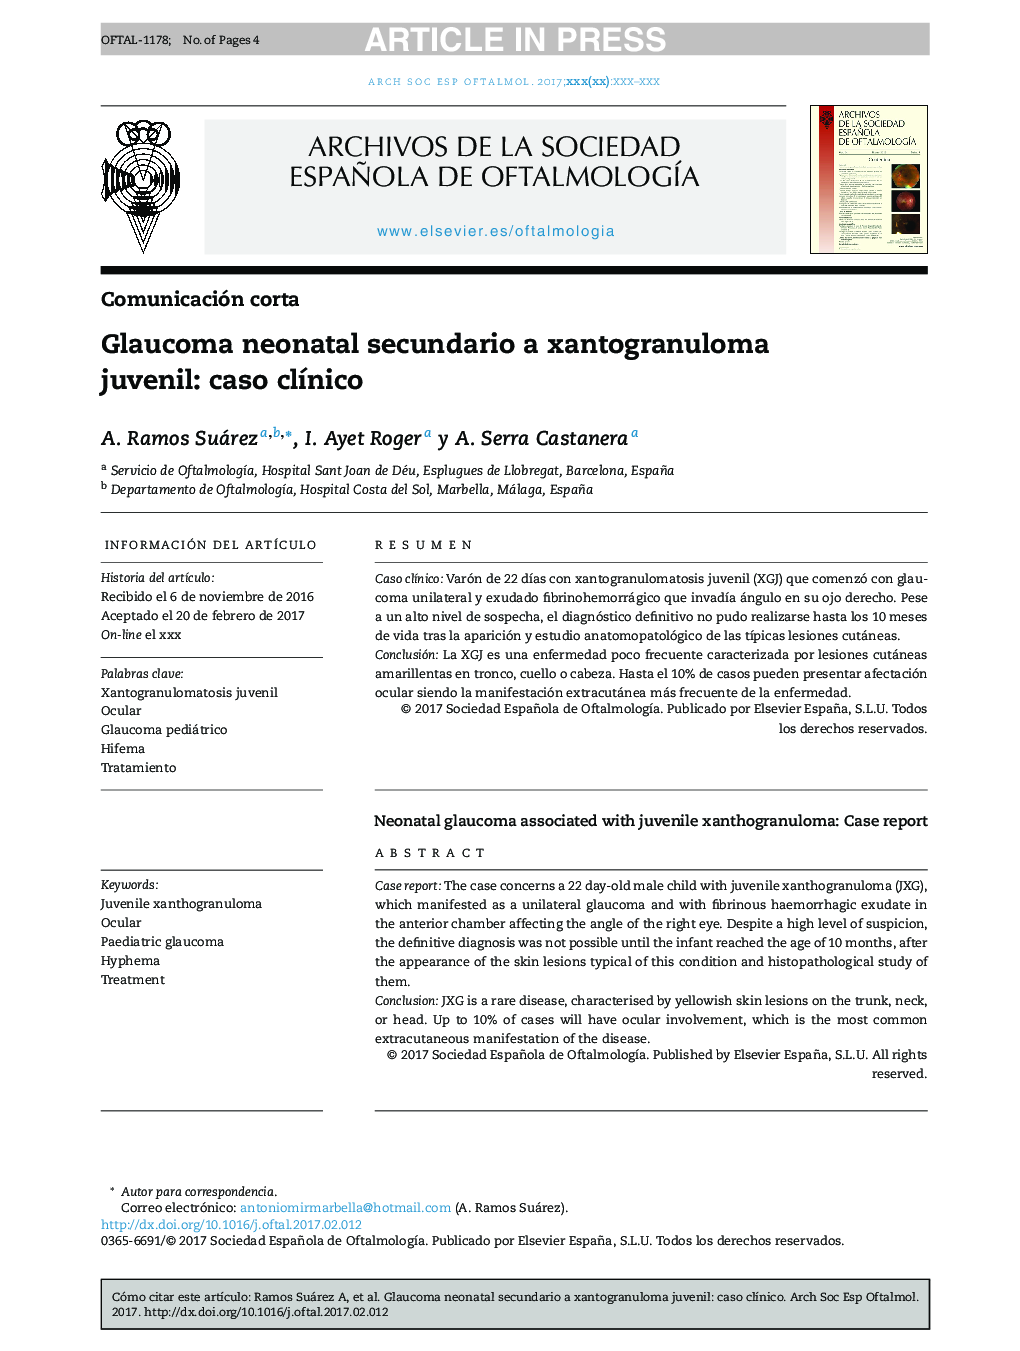 Glaucoma neonatal secundario a xantogranuloma juvenil: caso clÃ­nico